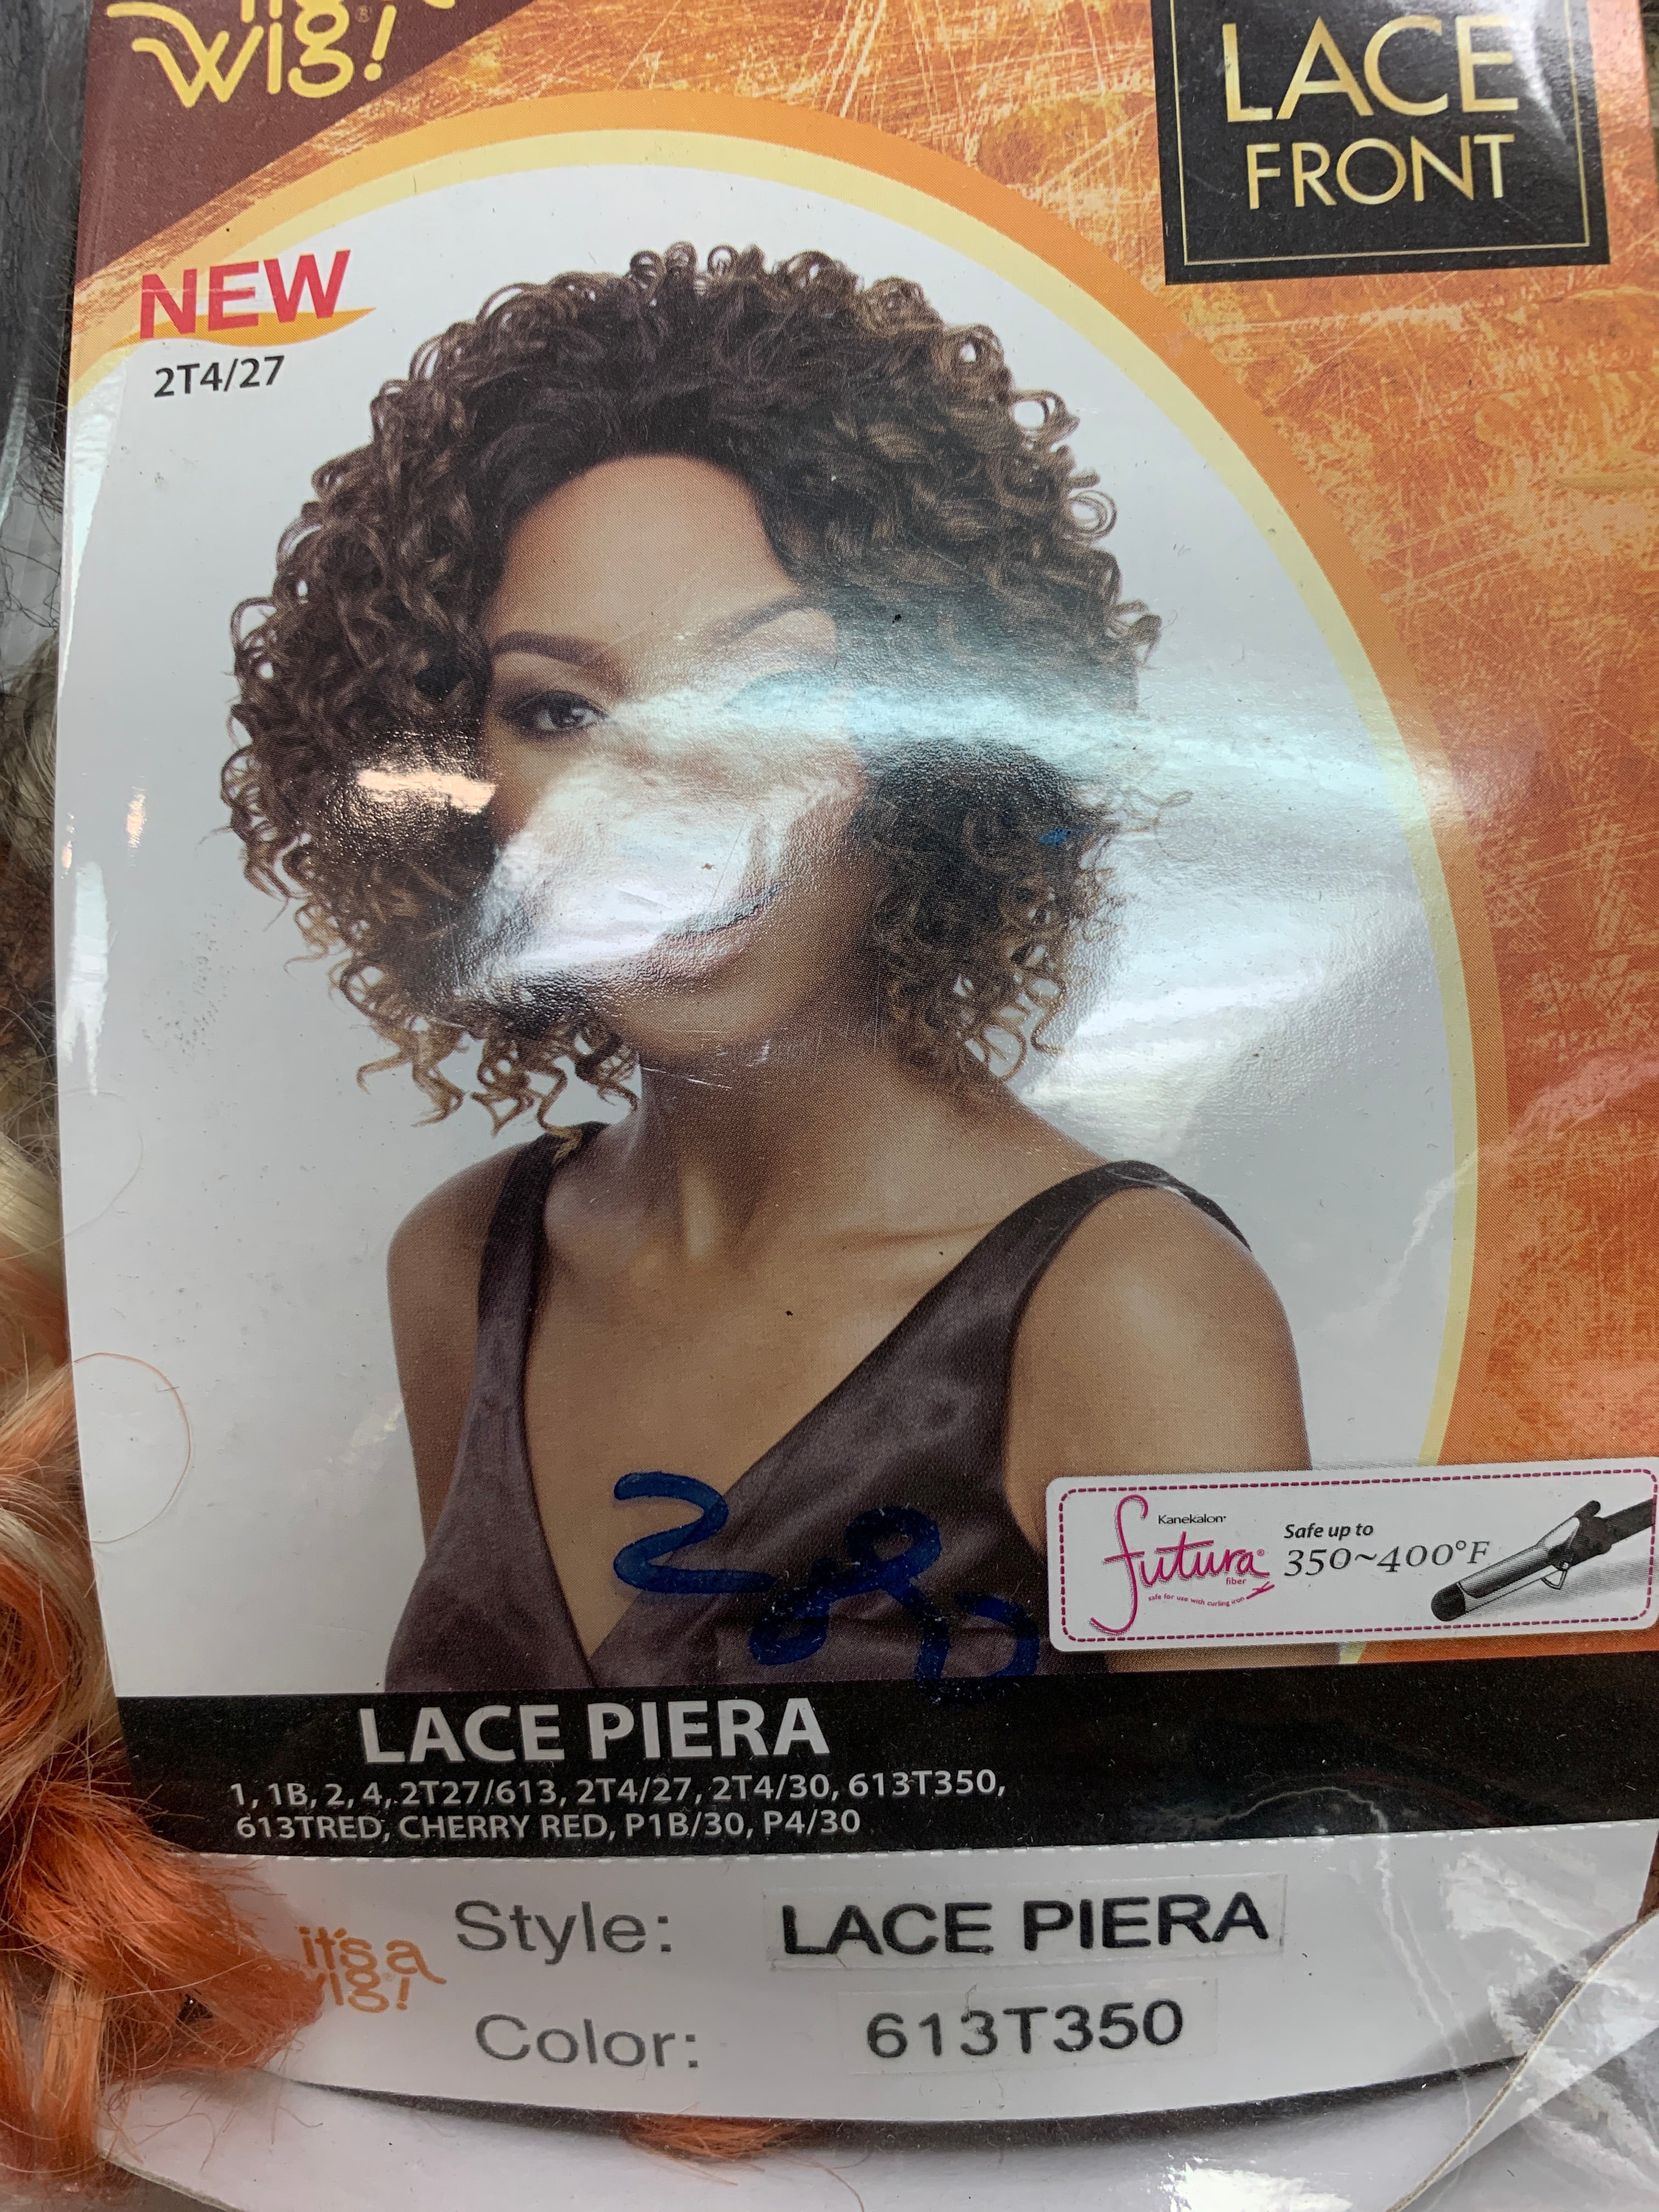 It’s a wig lace piera